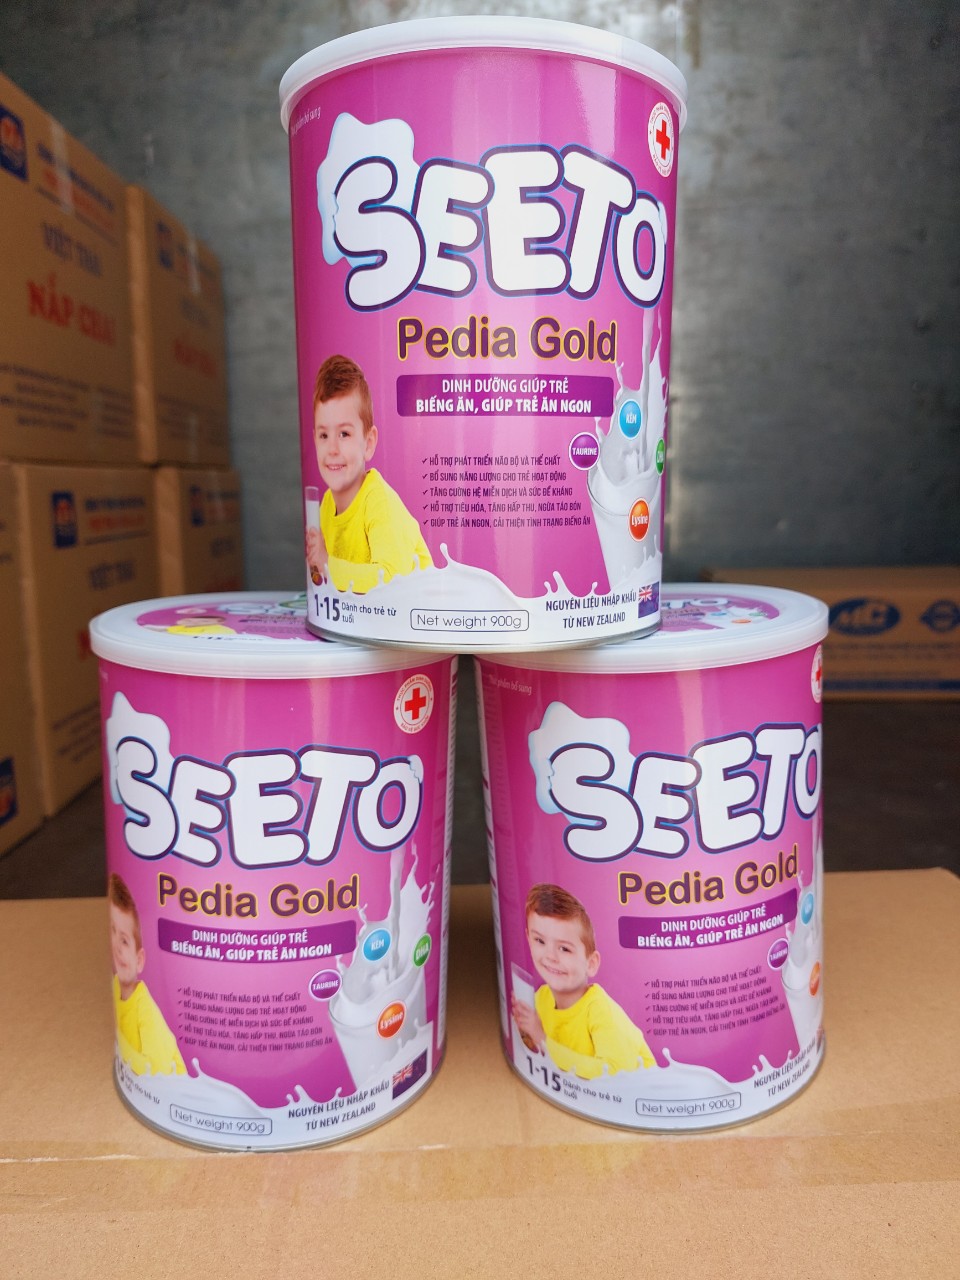 Sữa non SEETO Pedia Gold giúp bé ăn ngon, ngủ ngon, tăng sức khỏe